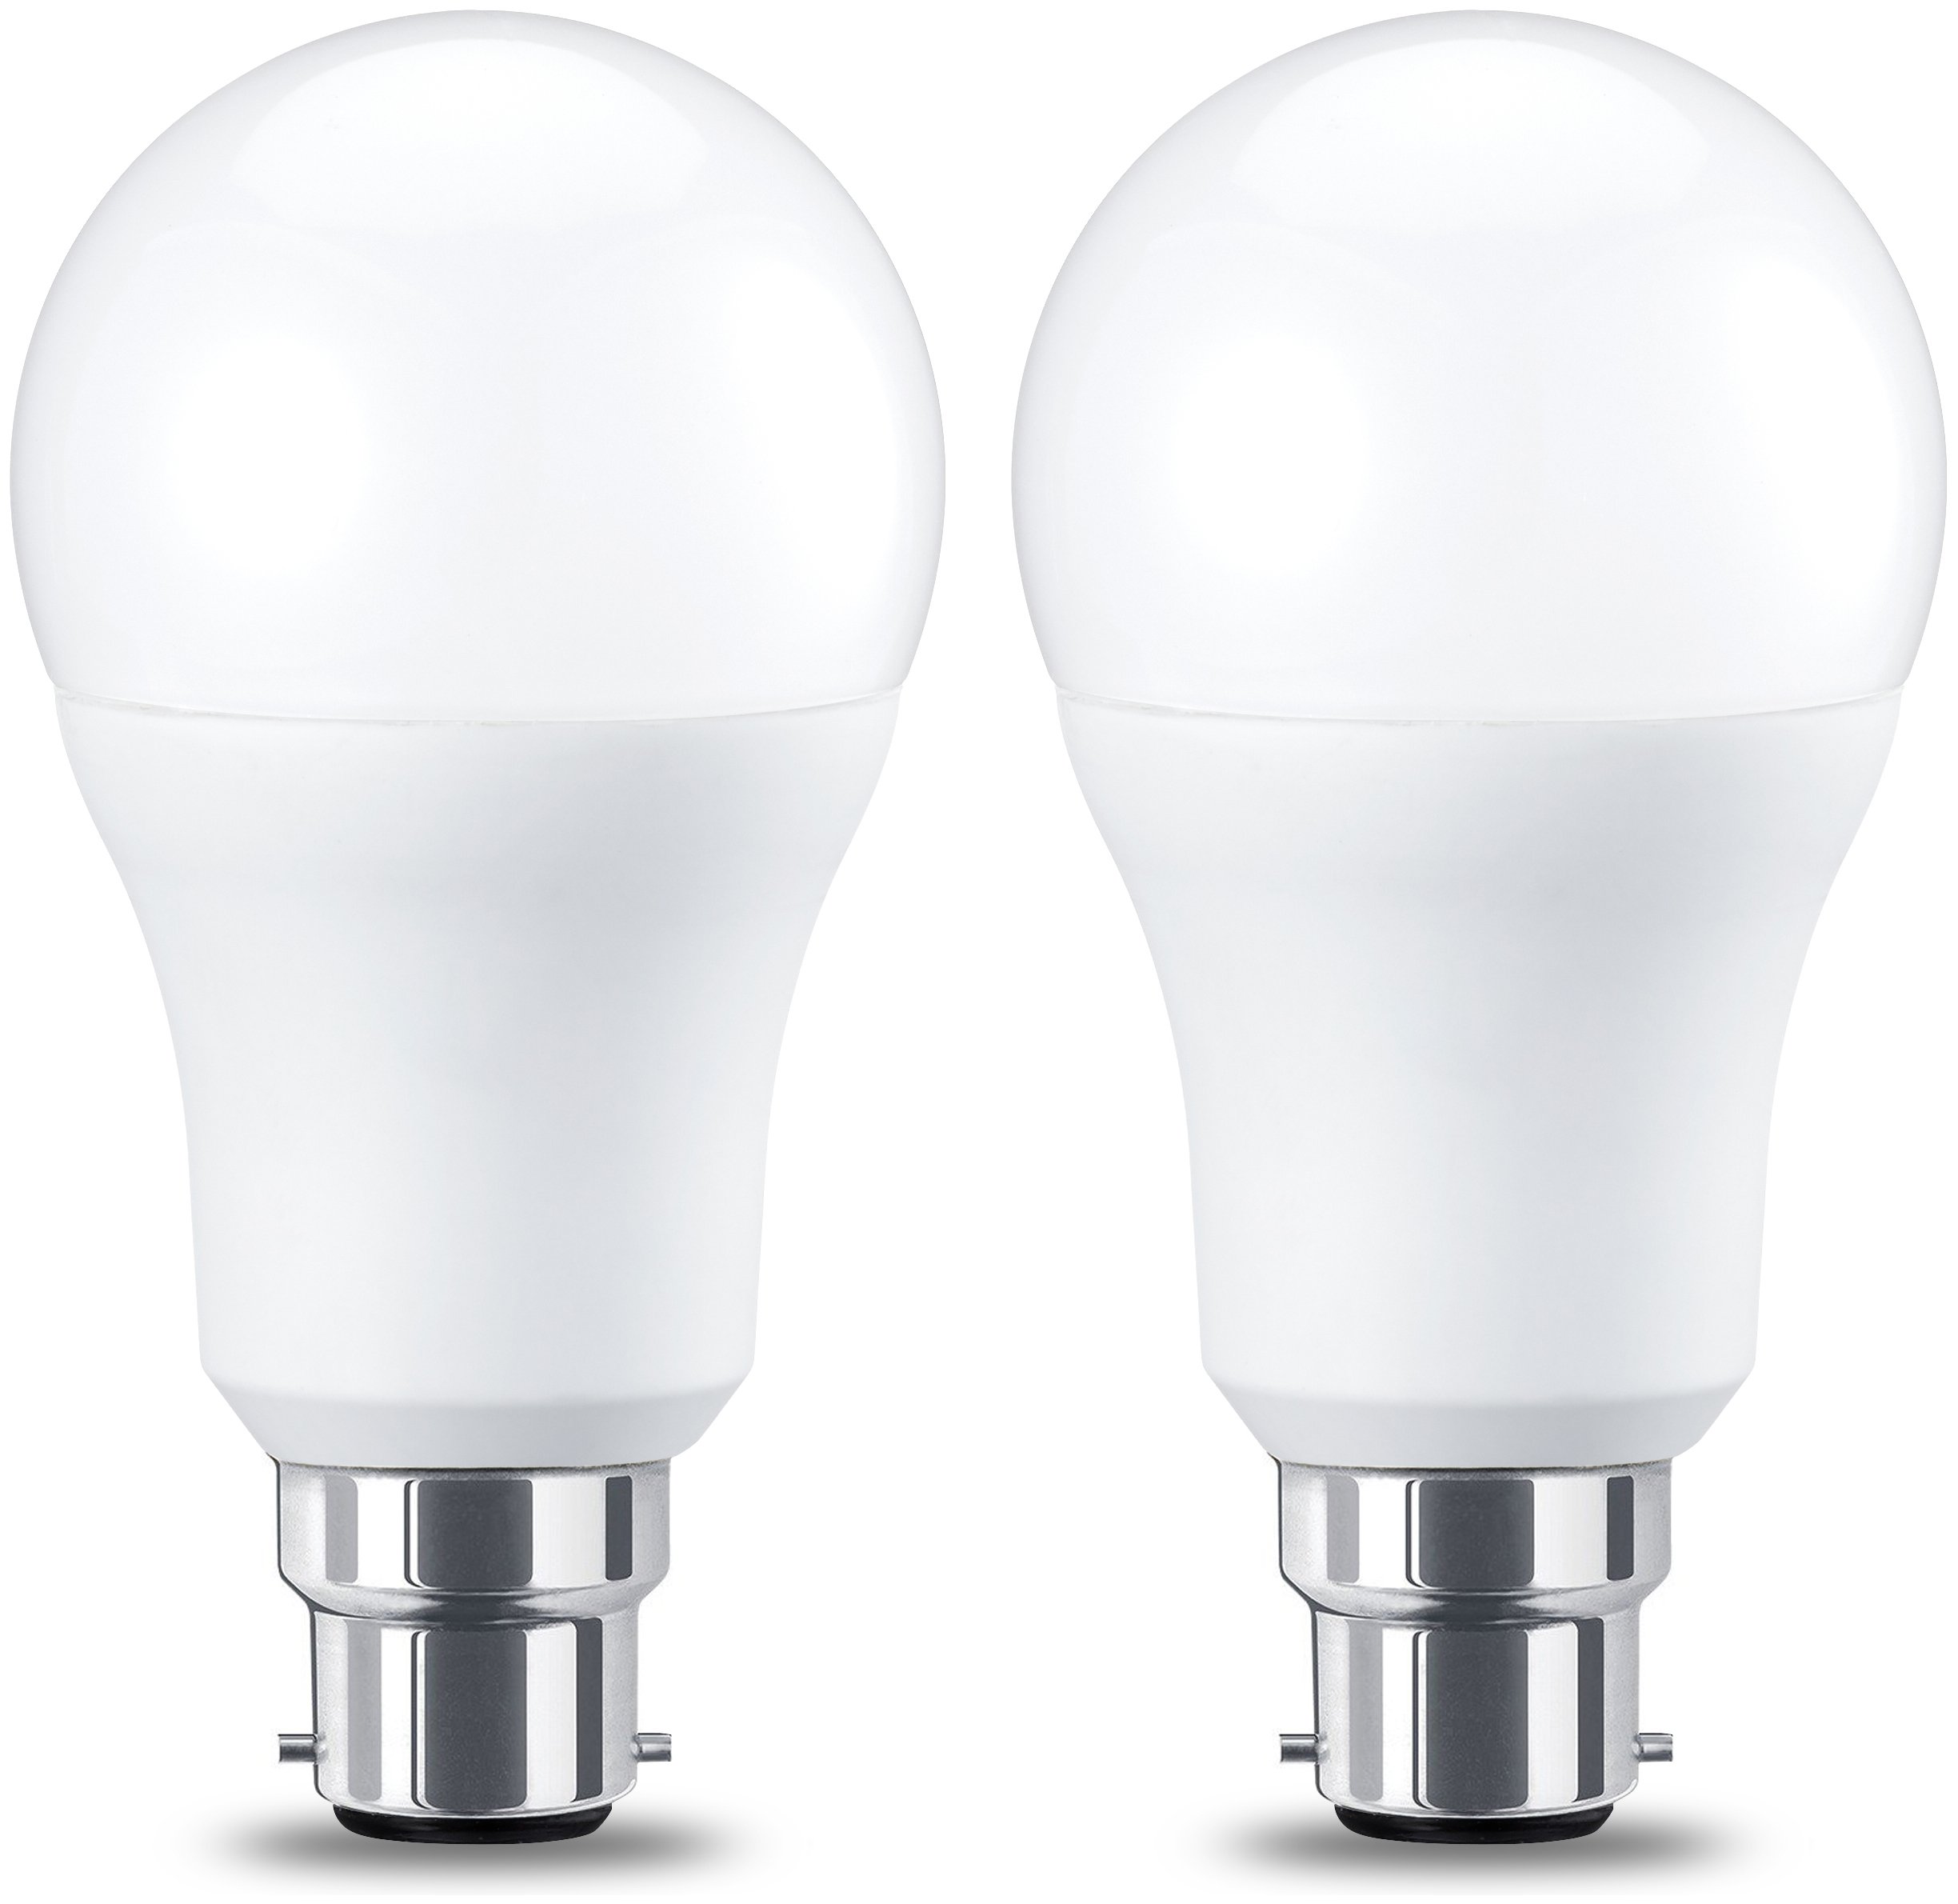 Abordable Amazon Basics Ampoule LED à baïonnette B22 A67, 14W (équivalent ampoule incandescente de 100W), blanc chaud, dimmable - Lot de 2 Pqz4s2lvS véritable contre